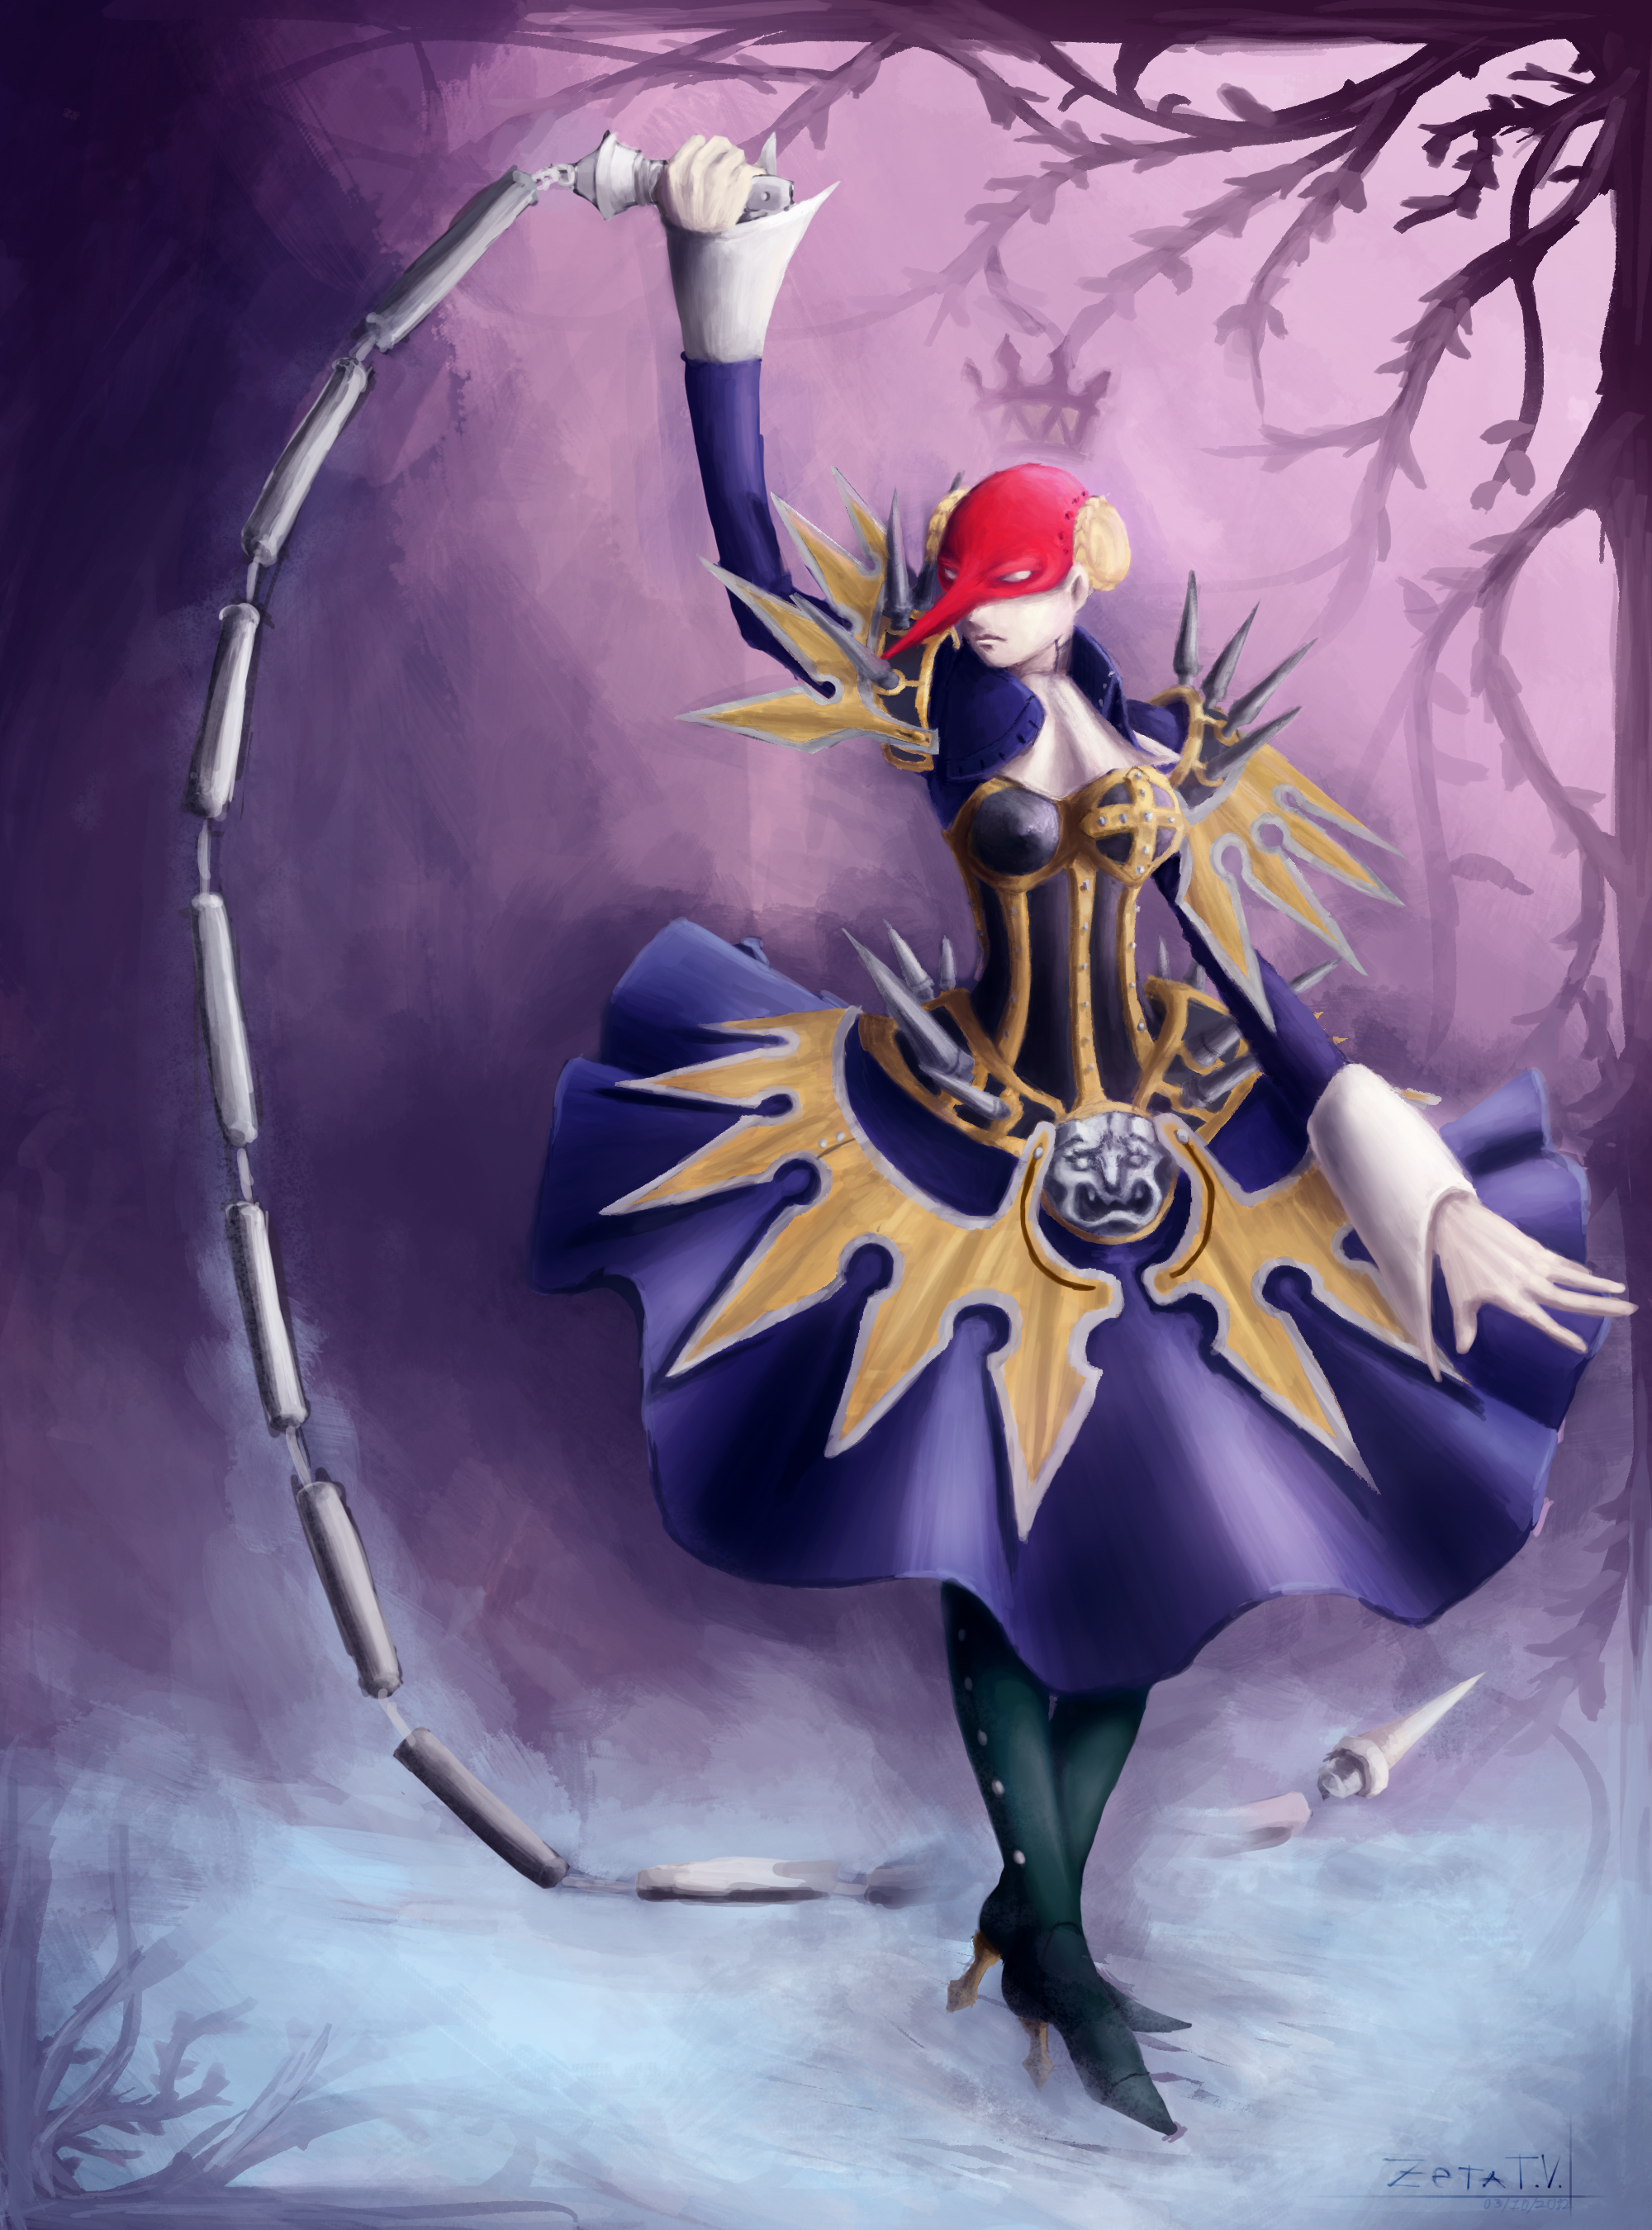 Persona for the Win - Persona 4TW Add-On pt. 3 - Artemisia (Artemis)